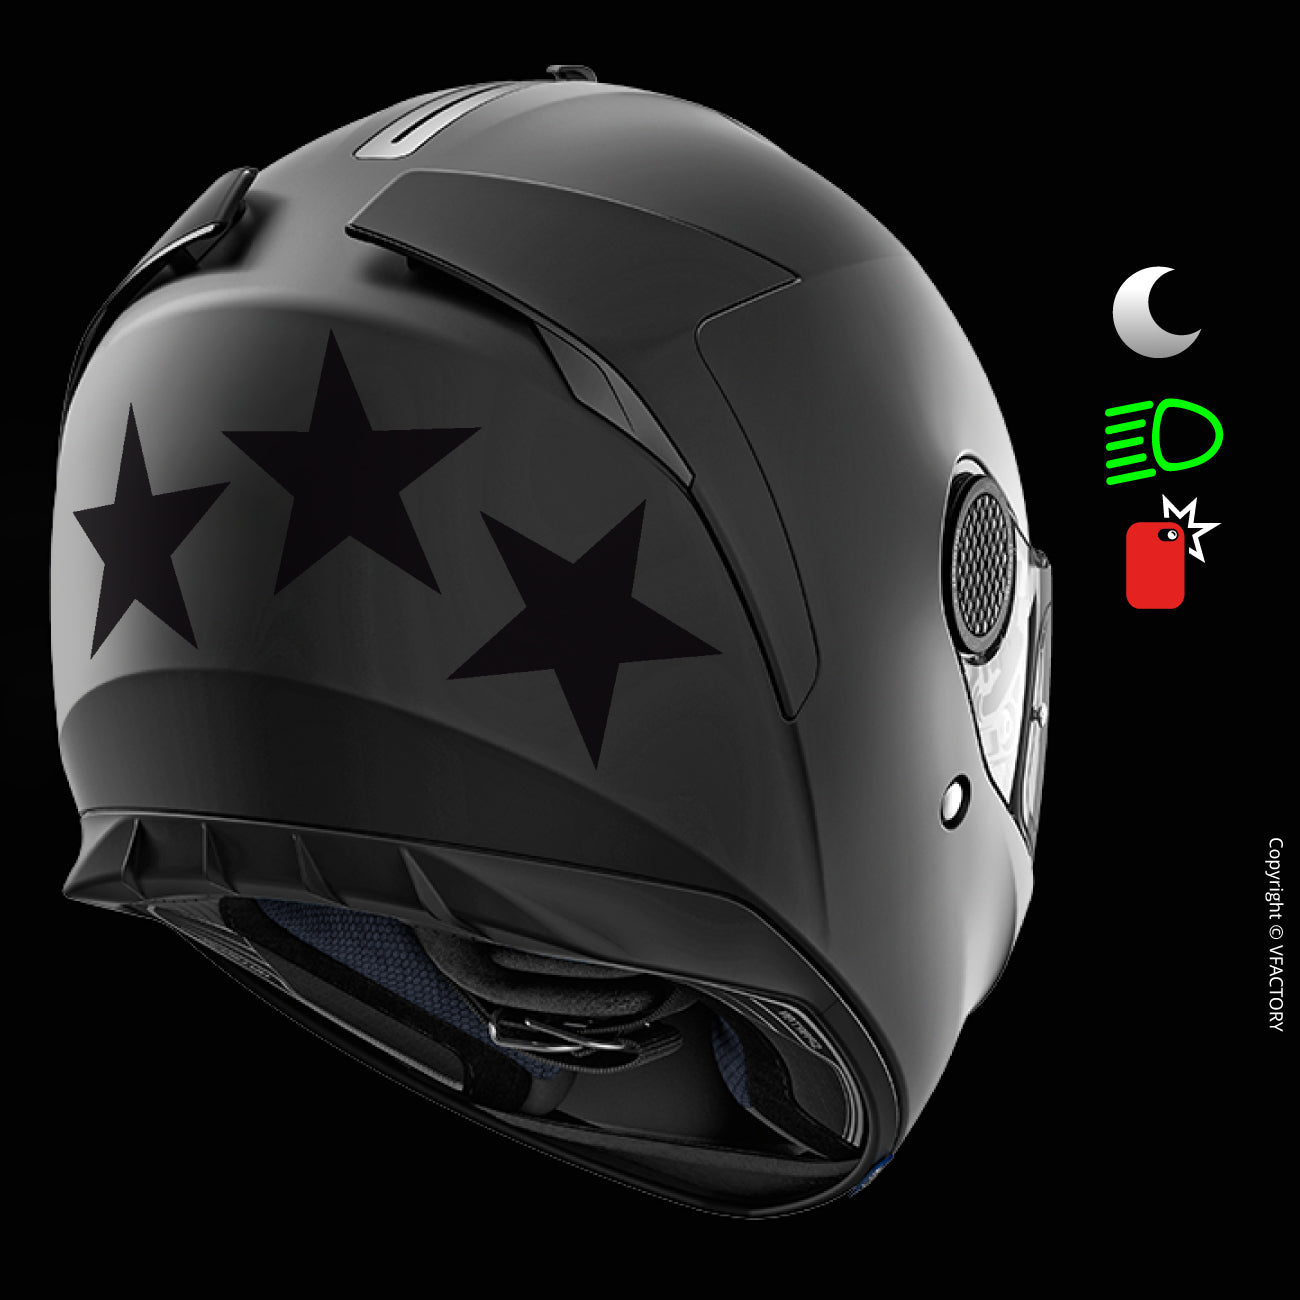 Stickers Réfléchissants Moto,reflecteur pieton pour Vélo,Autocollants  Reflecteurs,Réfléchissant Autocollants Stickers,Réflecteurs Vélo  Autocollants Réfléchissants,pour Voiture/Vélo/Poussette/Moto : :  Sports et Loisirs